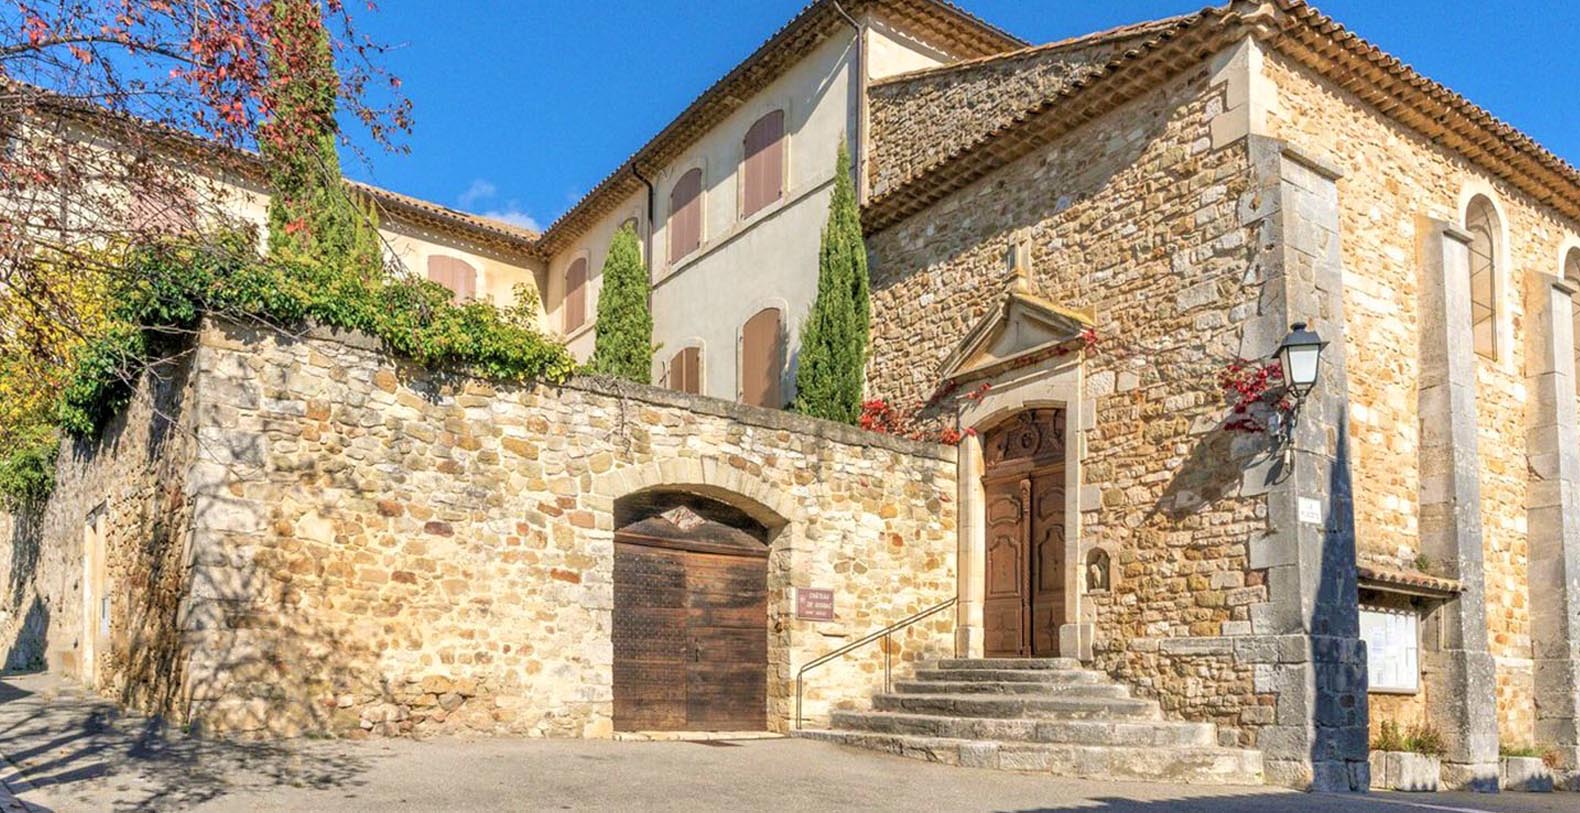 Chateau de Gignac Luxury Villa Holiday Rental